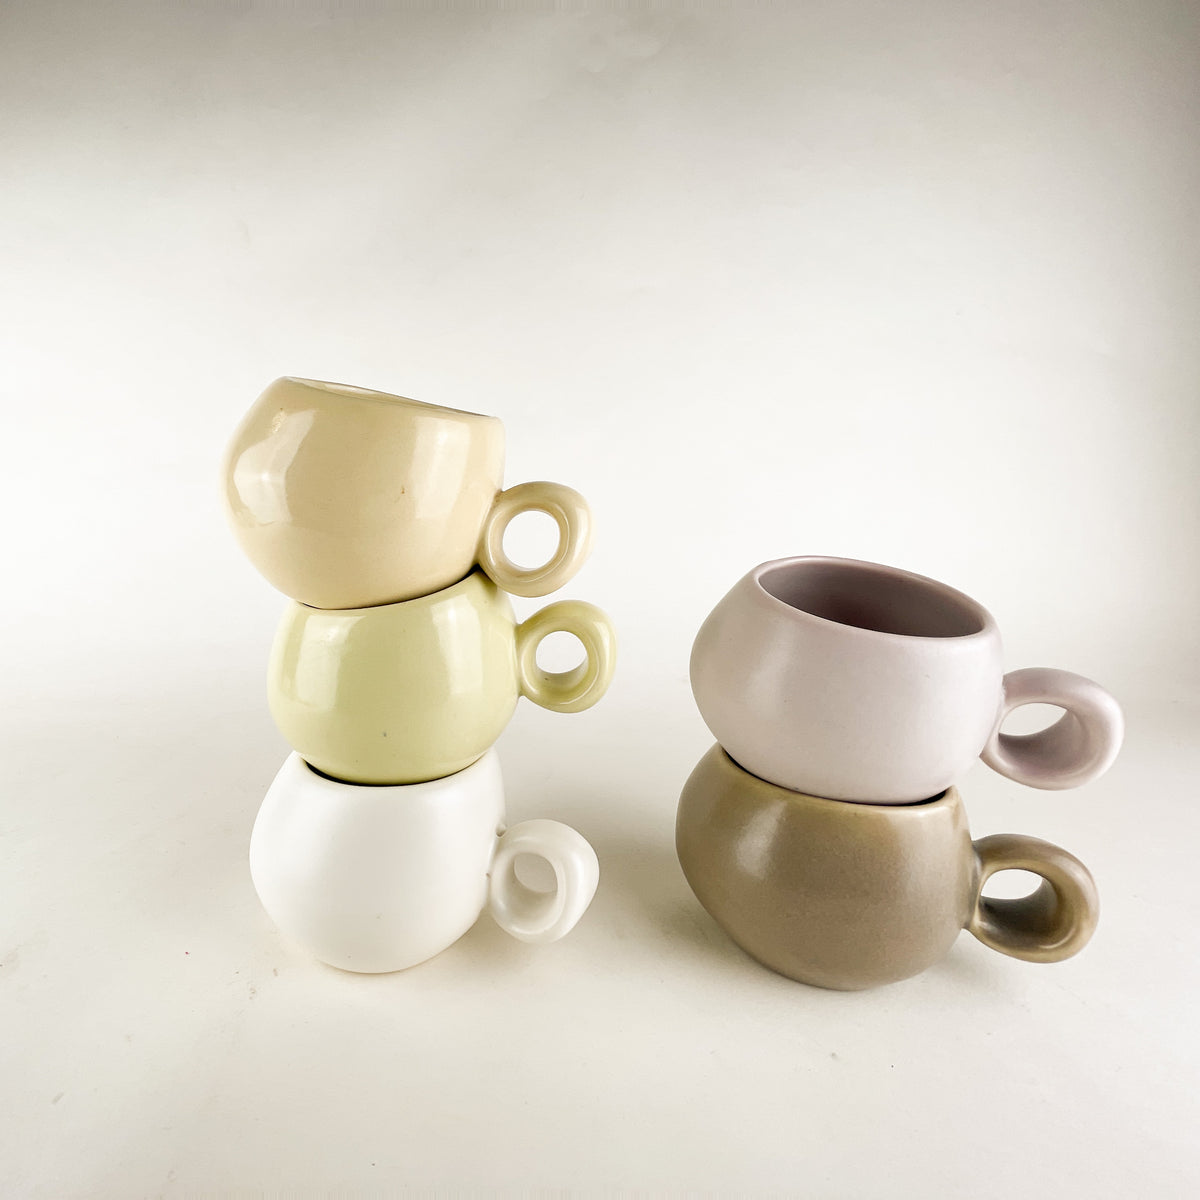 <!--3475--!>Glassware - Ceramic Mug